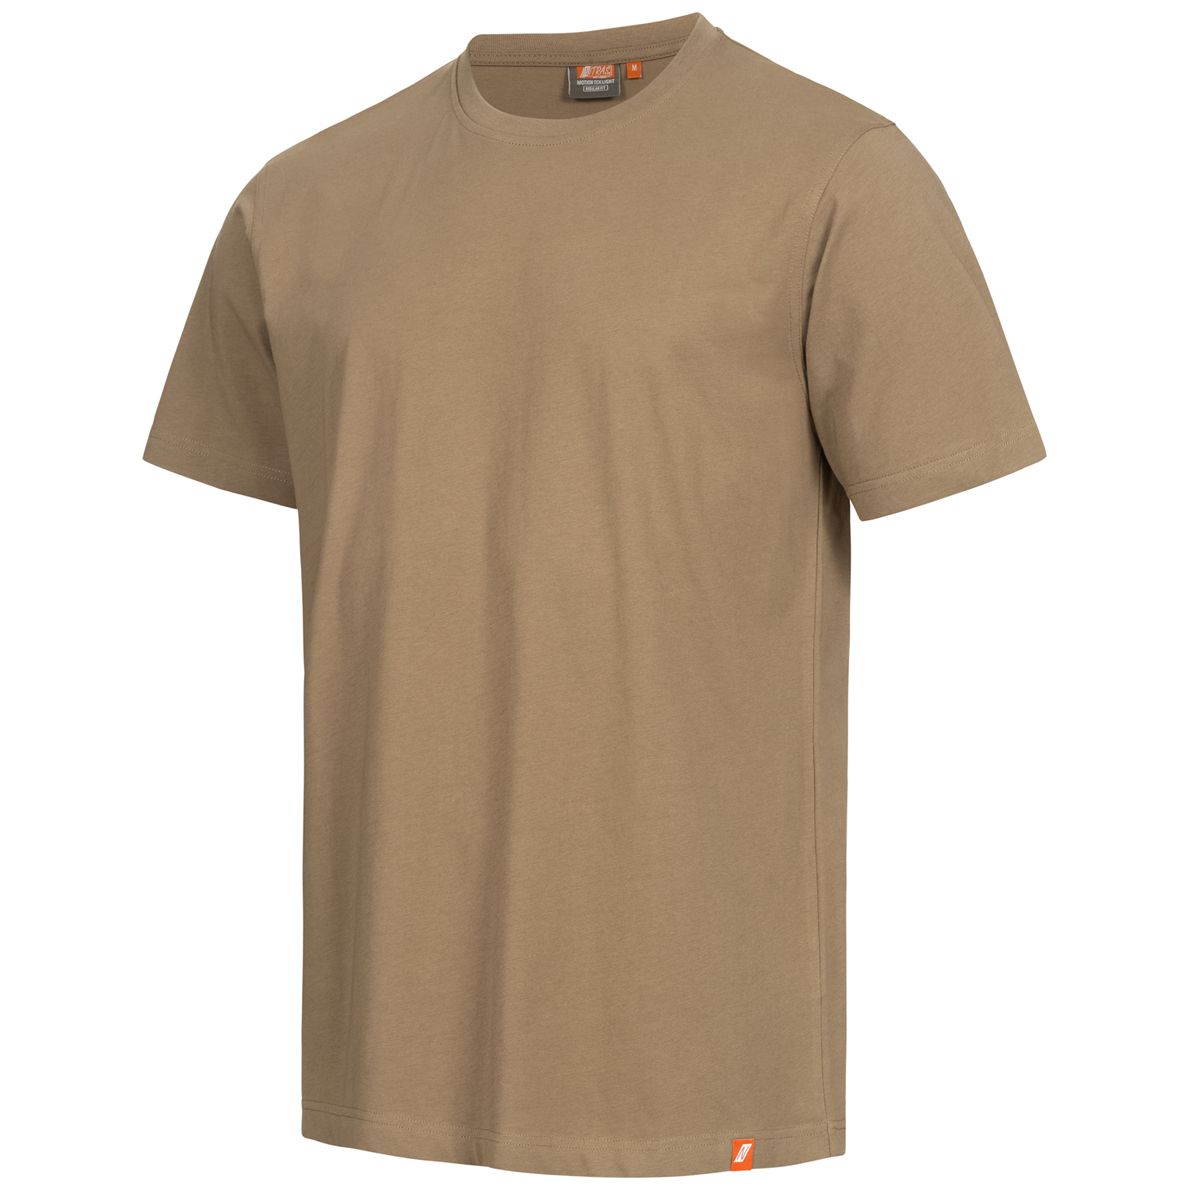 NITRAS MOTION TEX LIGHT Arbeits-T-Shirt - Kurzarm-Hemd aus 100% Baumwolle - für die Arbeit - Beige - 5XL